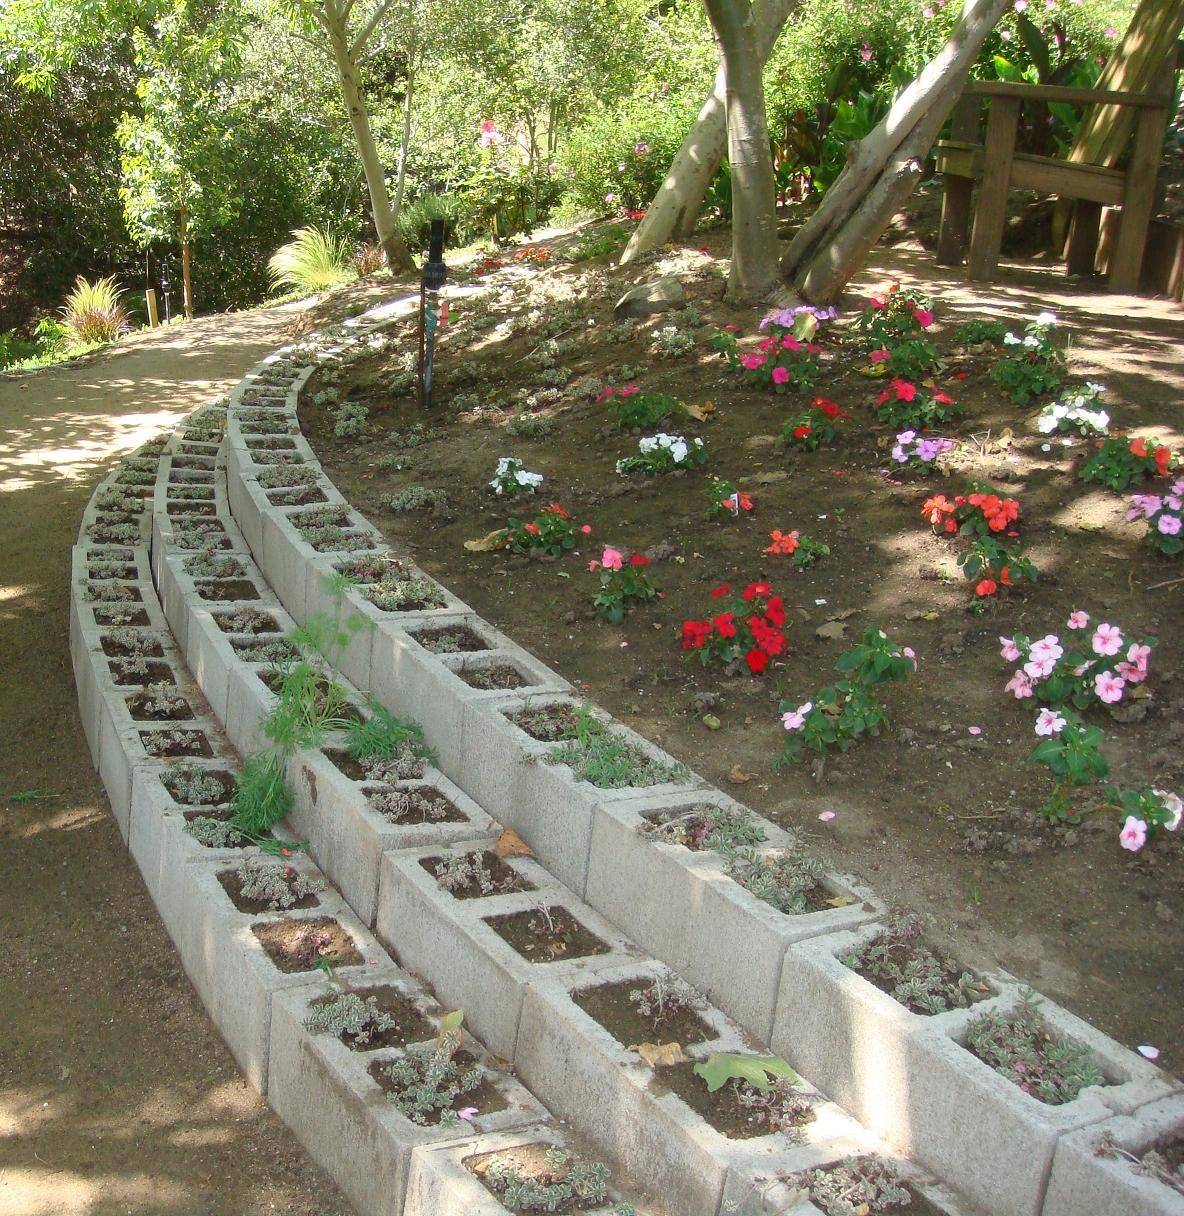 A Concrete Block Garden